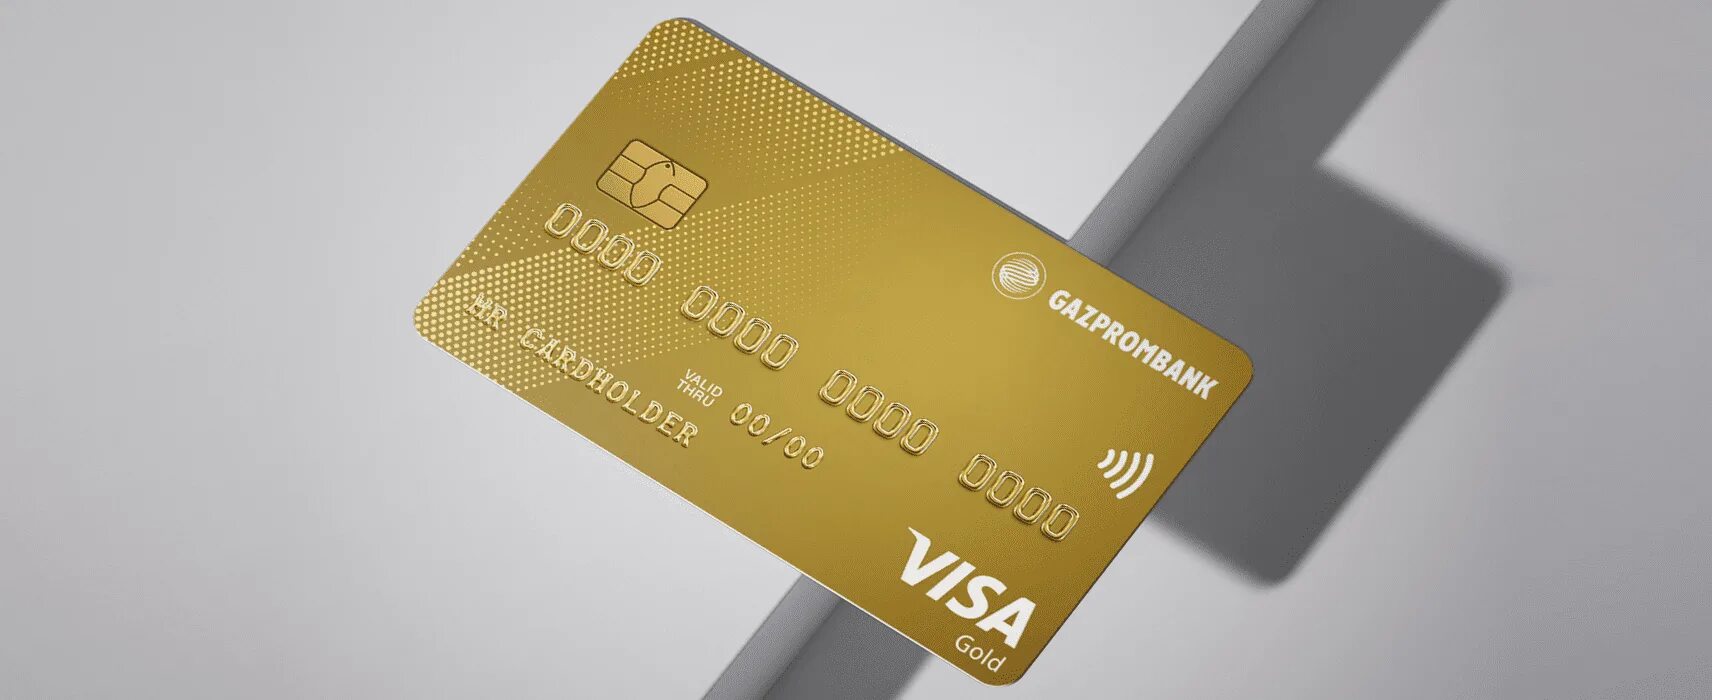 Кредитная карта "удобная карта ". Золотая карта. Газпромбанк кредитная карта. Кредитная карта 180 дней.